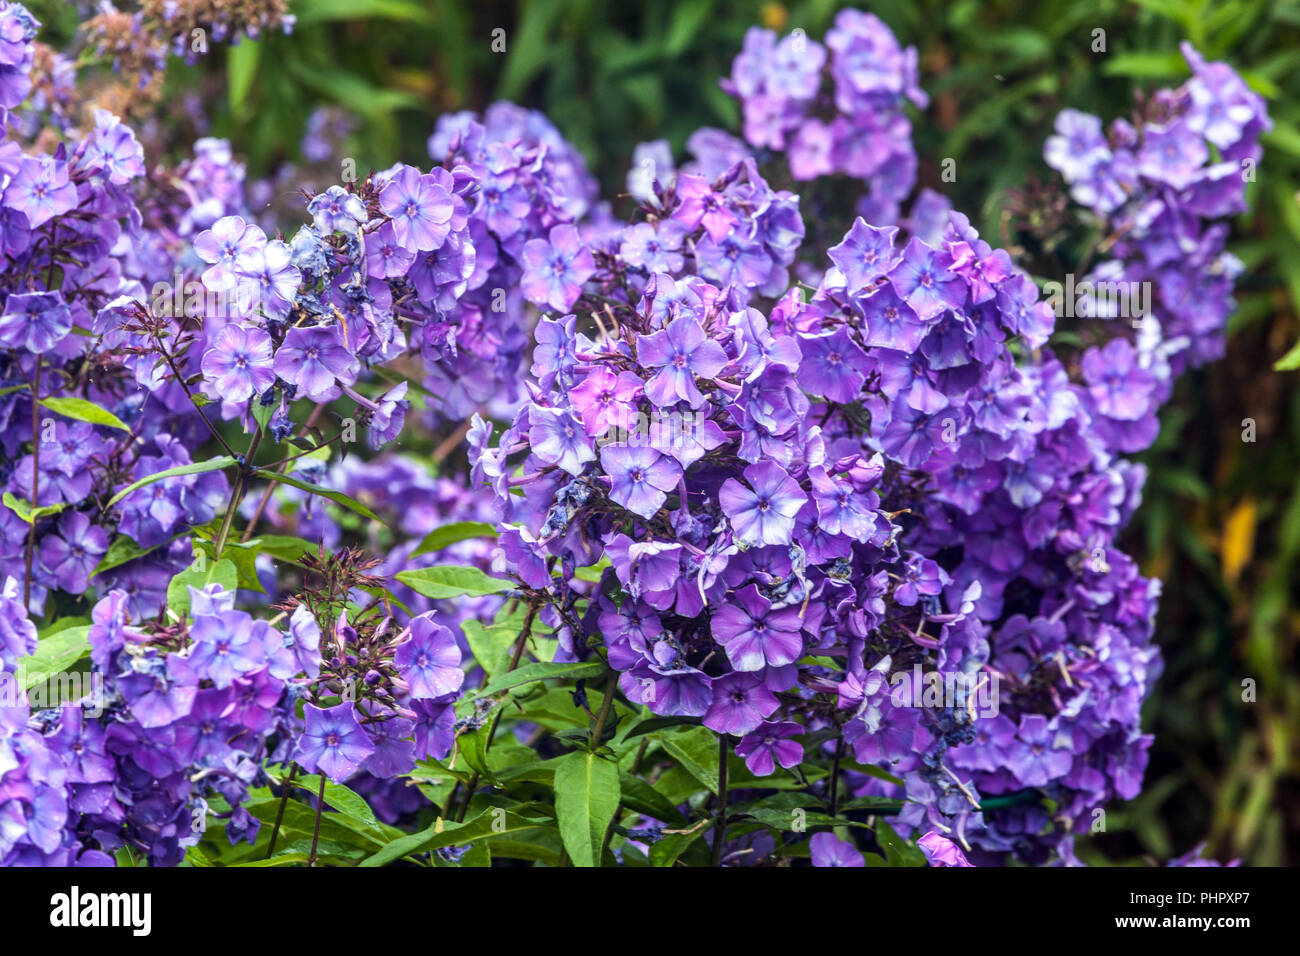 Garden perennial, Phlox paniculata 'Blue Paradise' Stock Photo